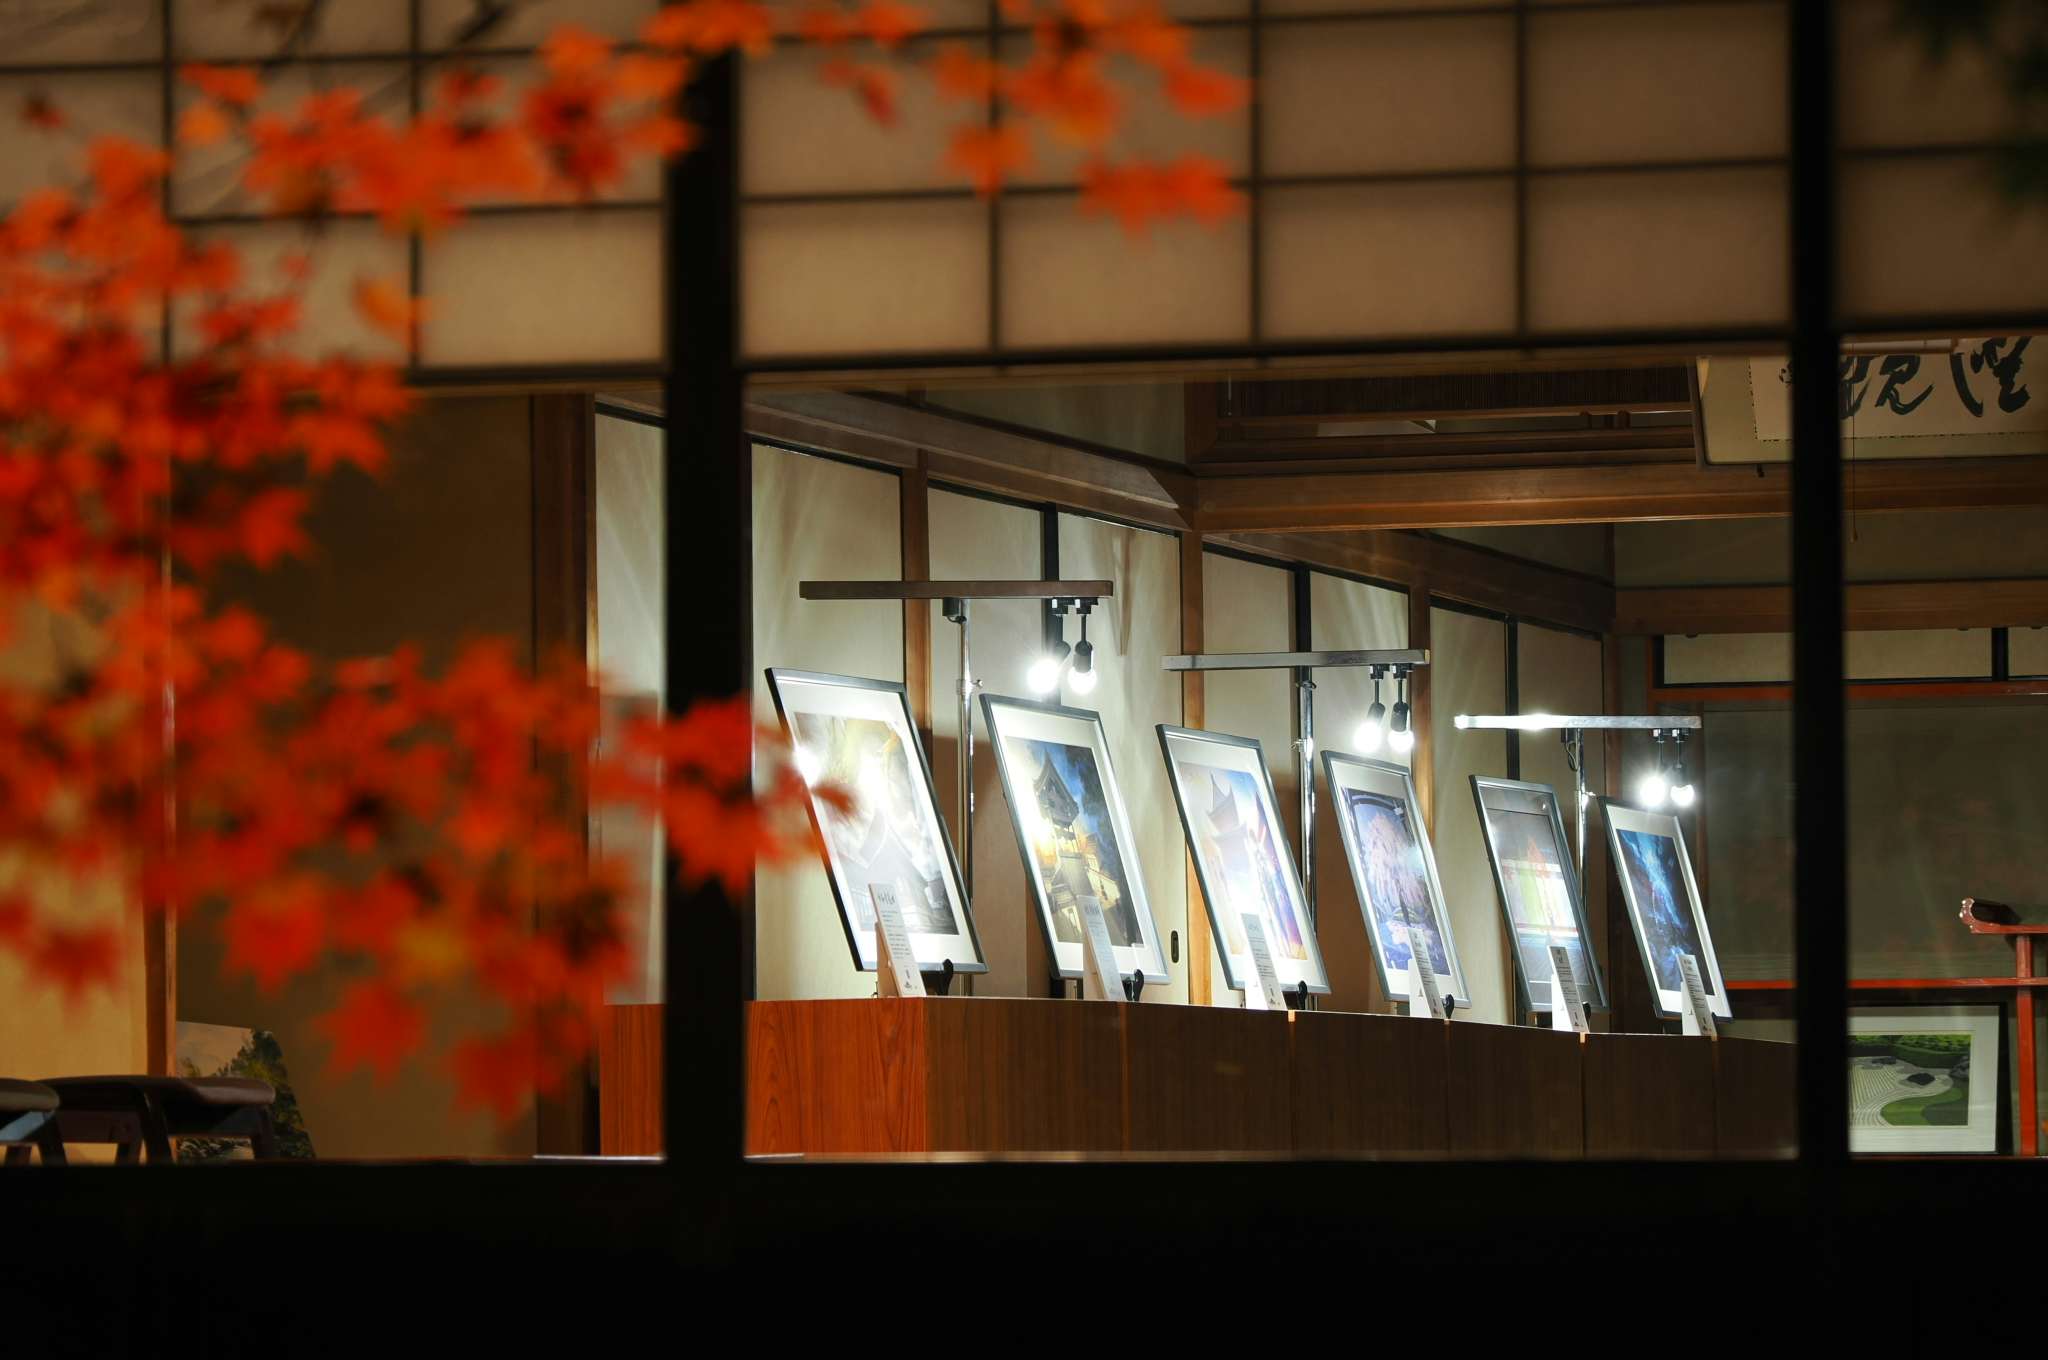 京都・妙心寺「令和妙心寺六景」が開催中。6名のクリエイターが表現